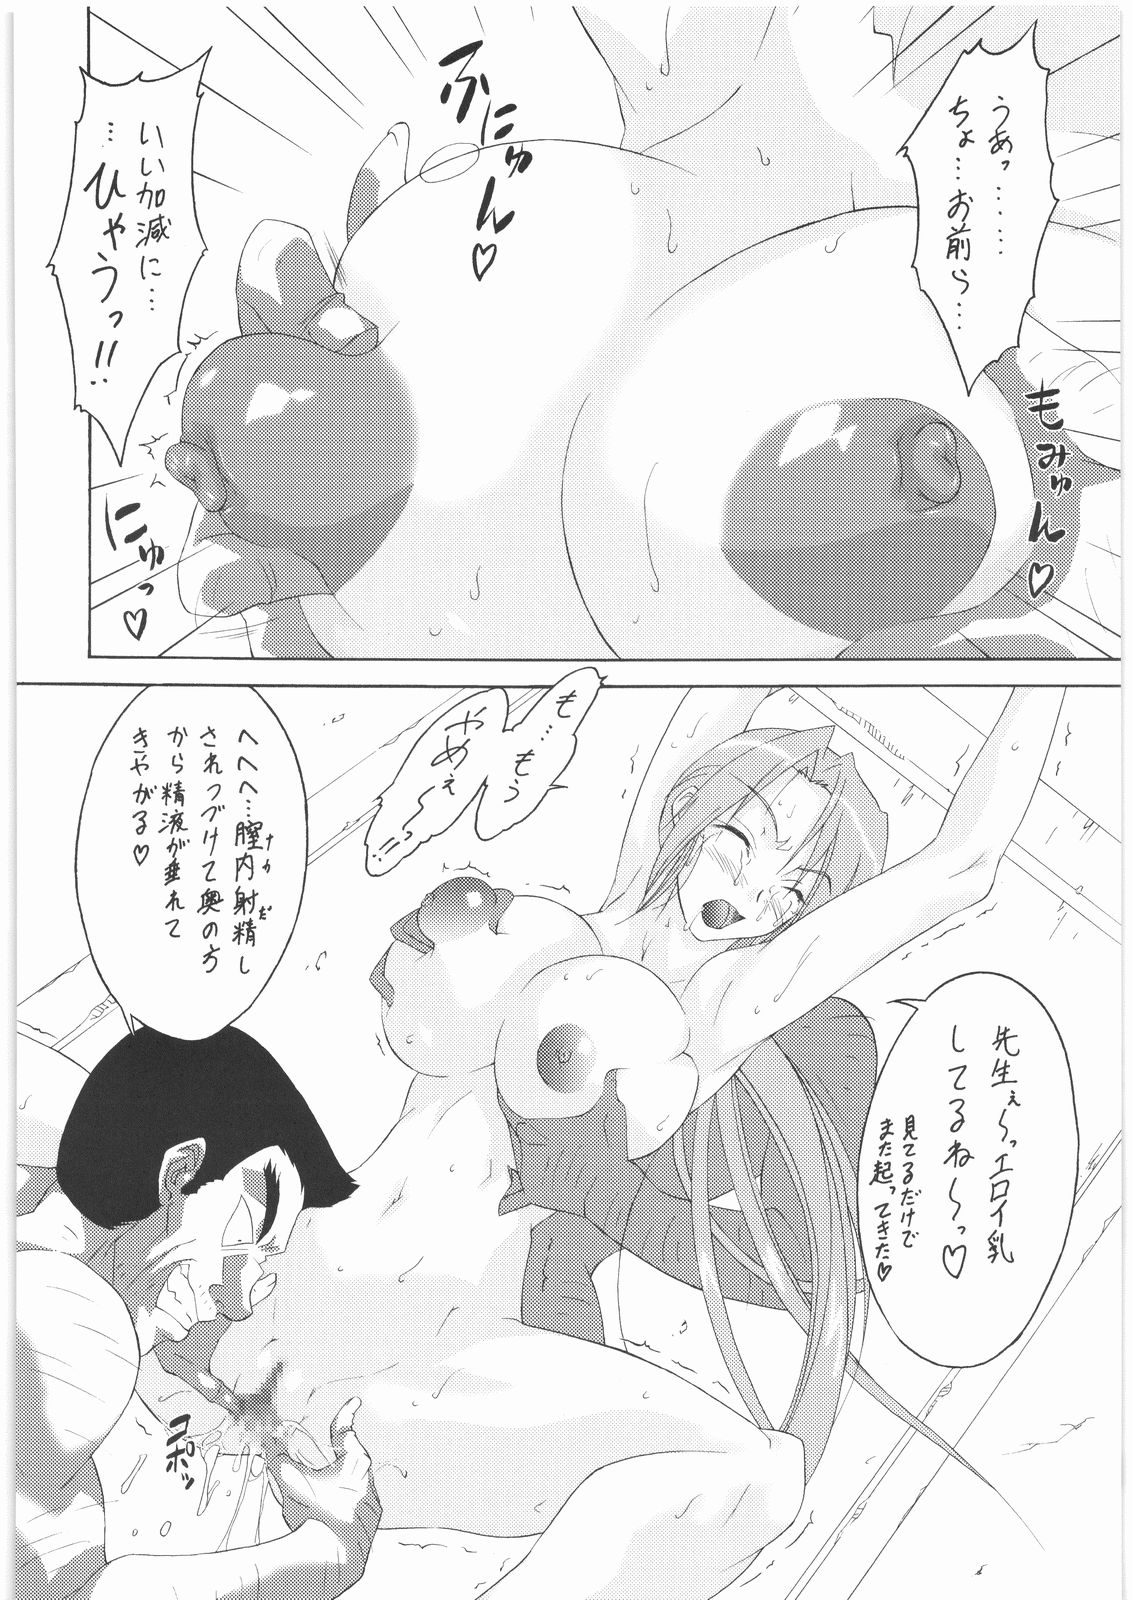 [Suzuki Giken & Tsurikichi-Doume] Konata no Maruhi Baito (Lucky Star) page 5 full